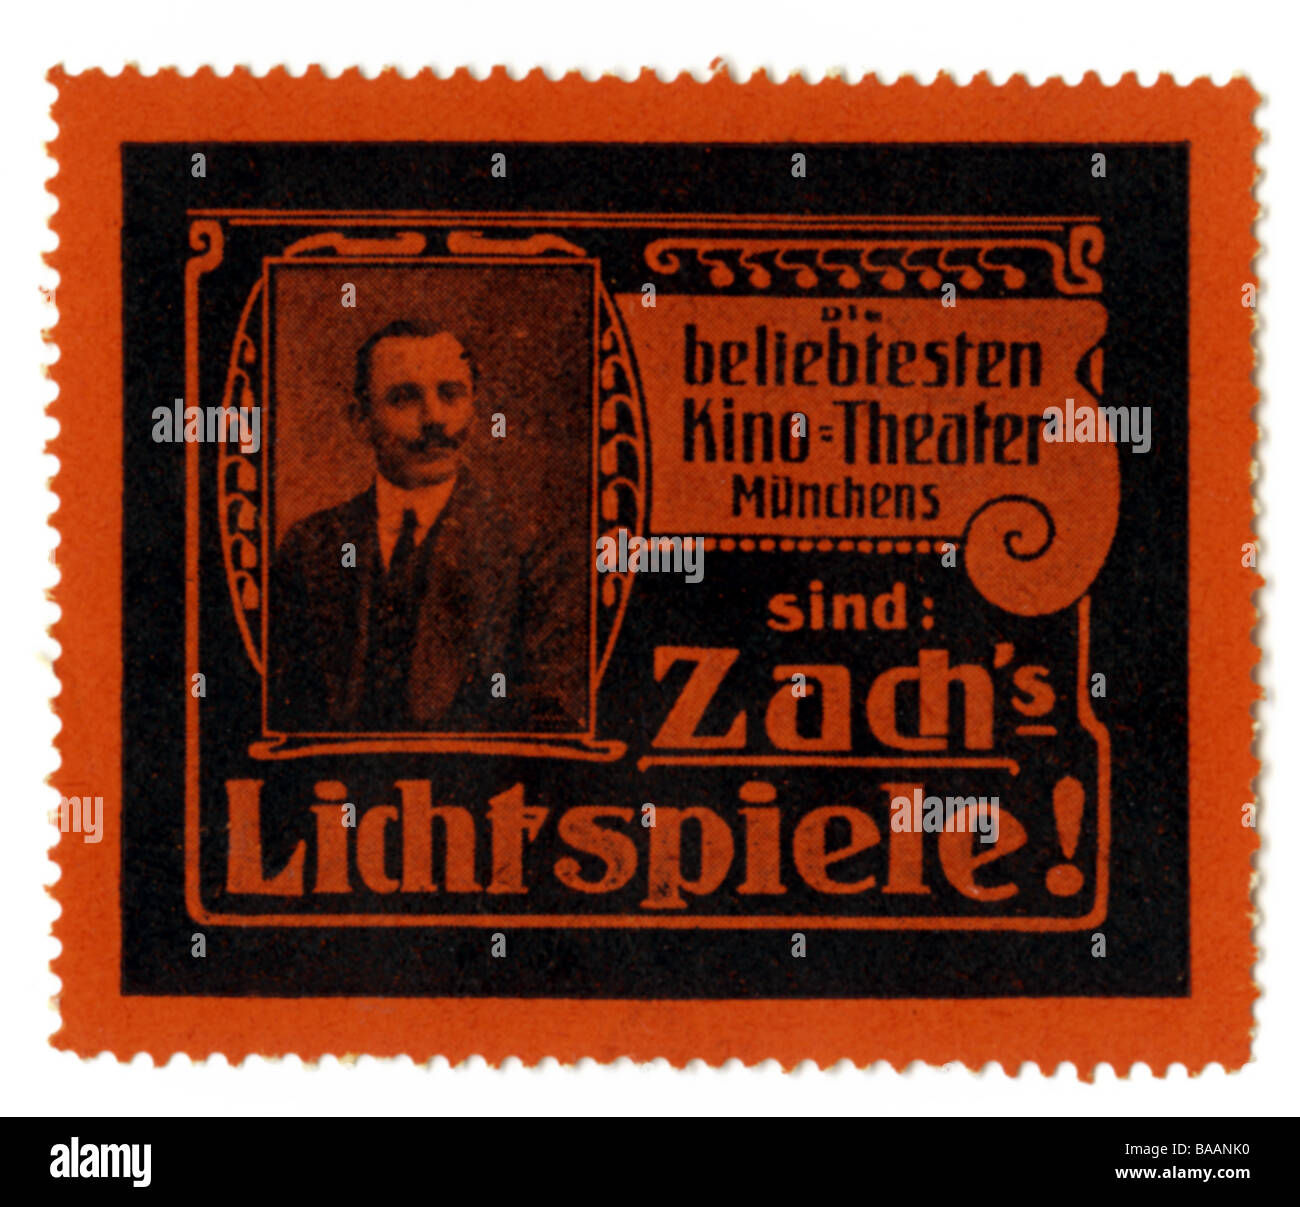 advertising, stamps, 'Die beliebtesten Kino-Theater Münchens sind Zach's Lichtspiele', Munich, Germany, circa 1910, Stock Photo